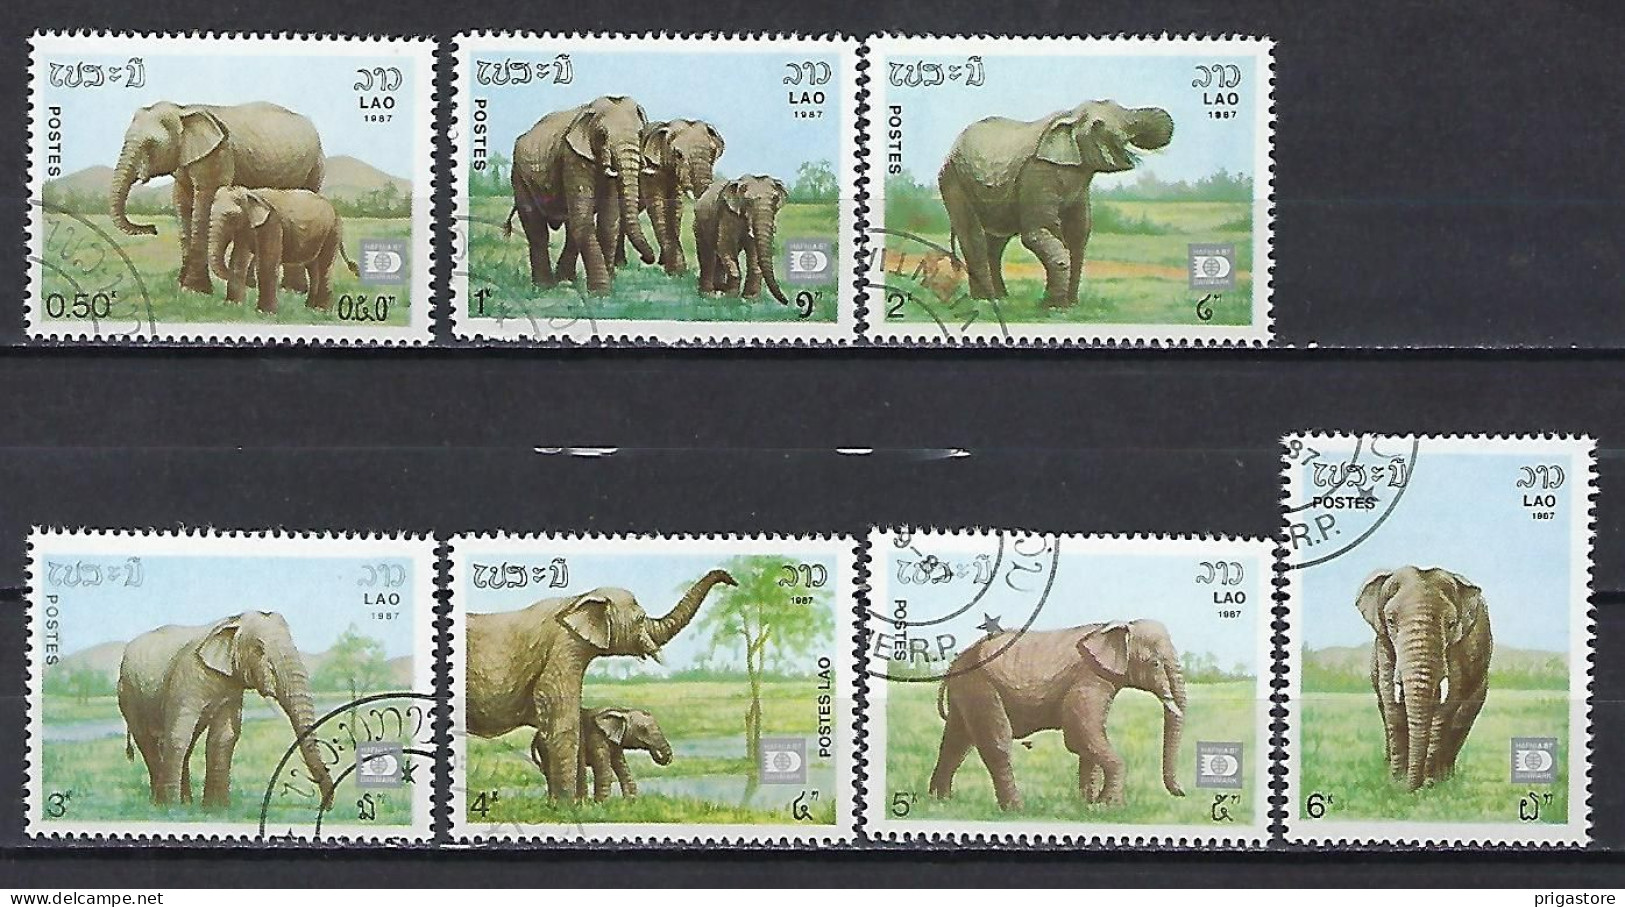 Eléphants Laos 1987 (605) Yvert 791 à 797 Oblitérés Used - Eléphants